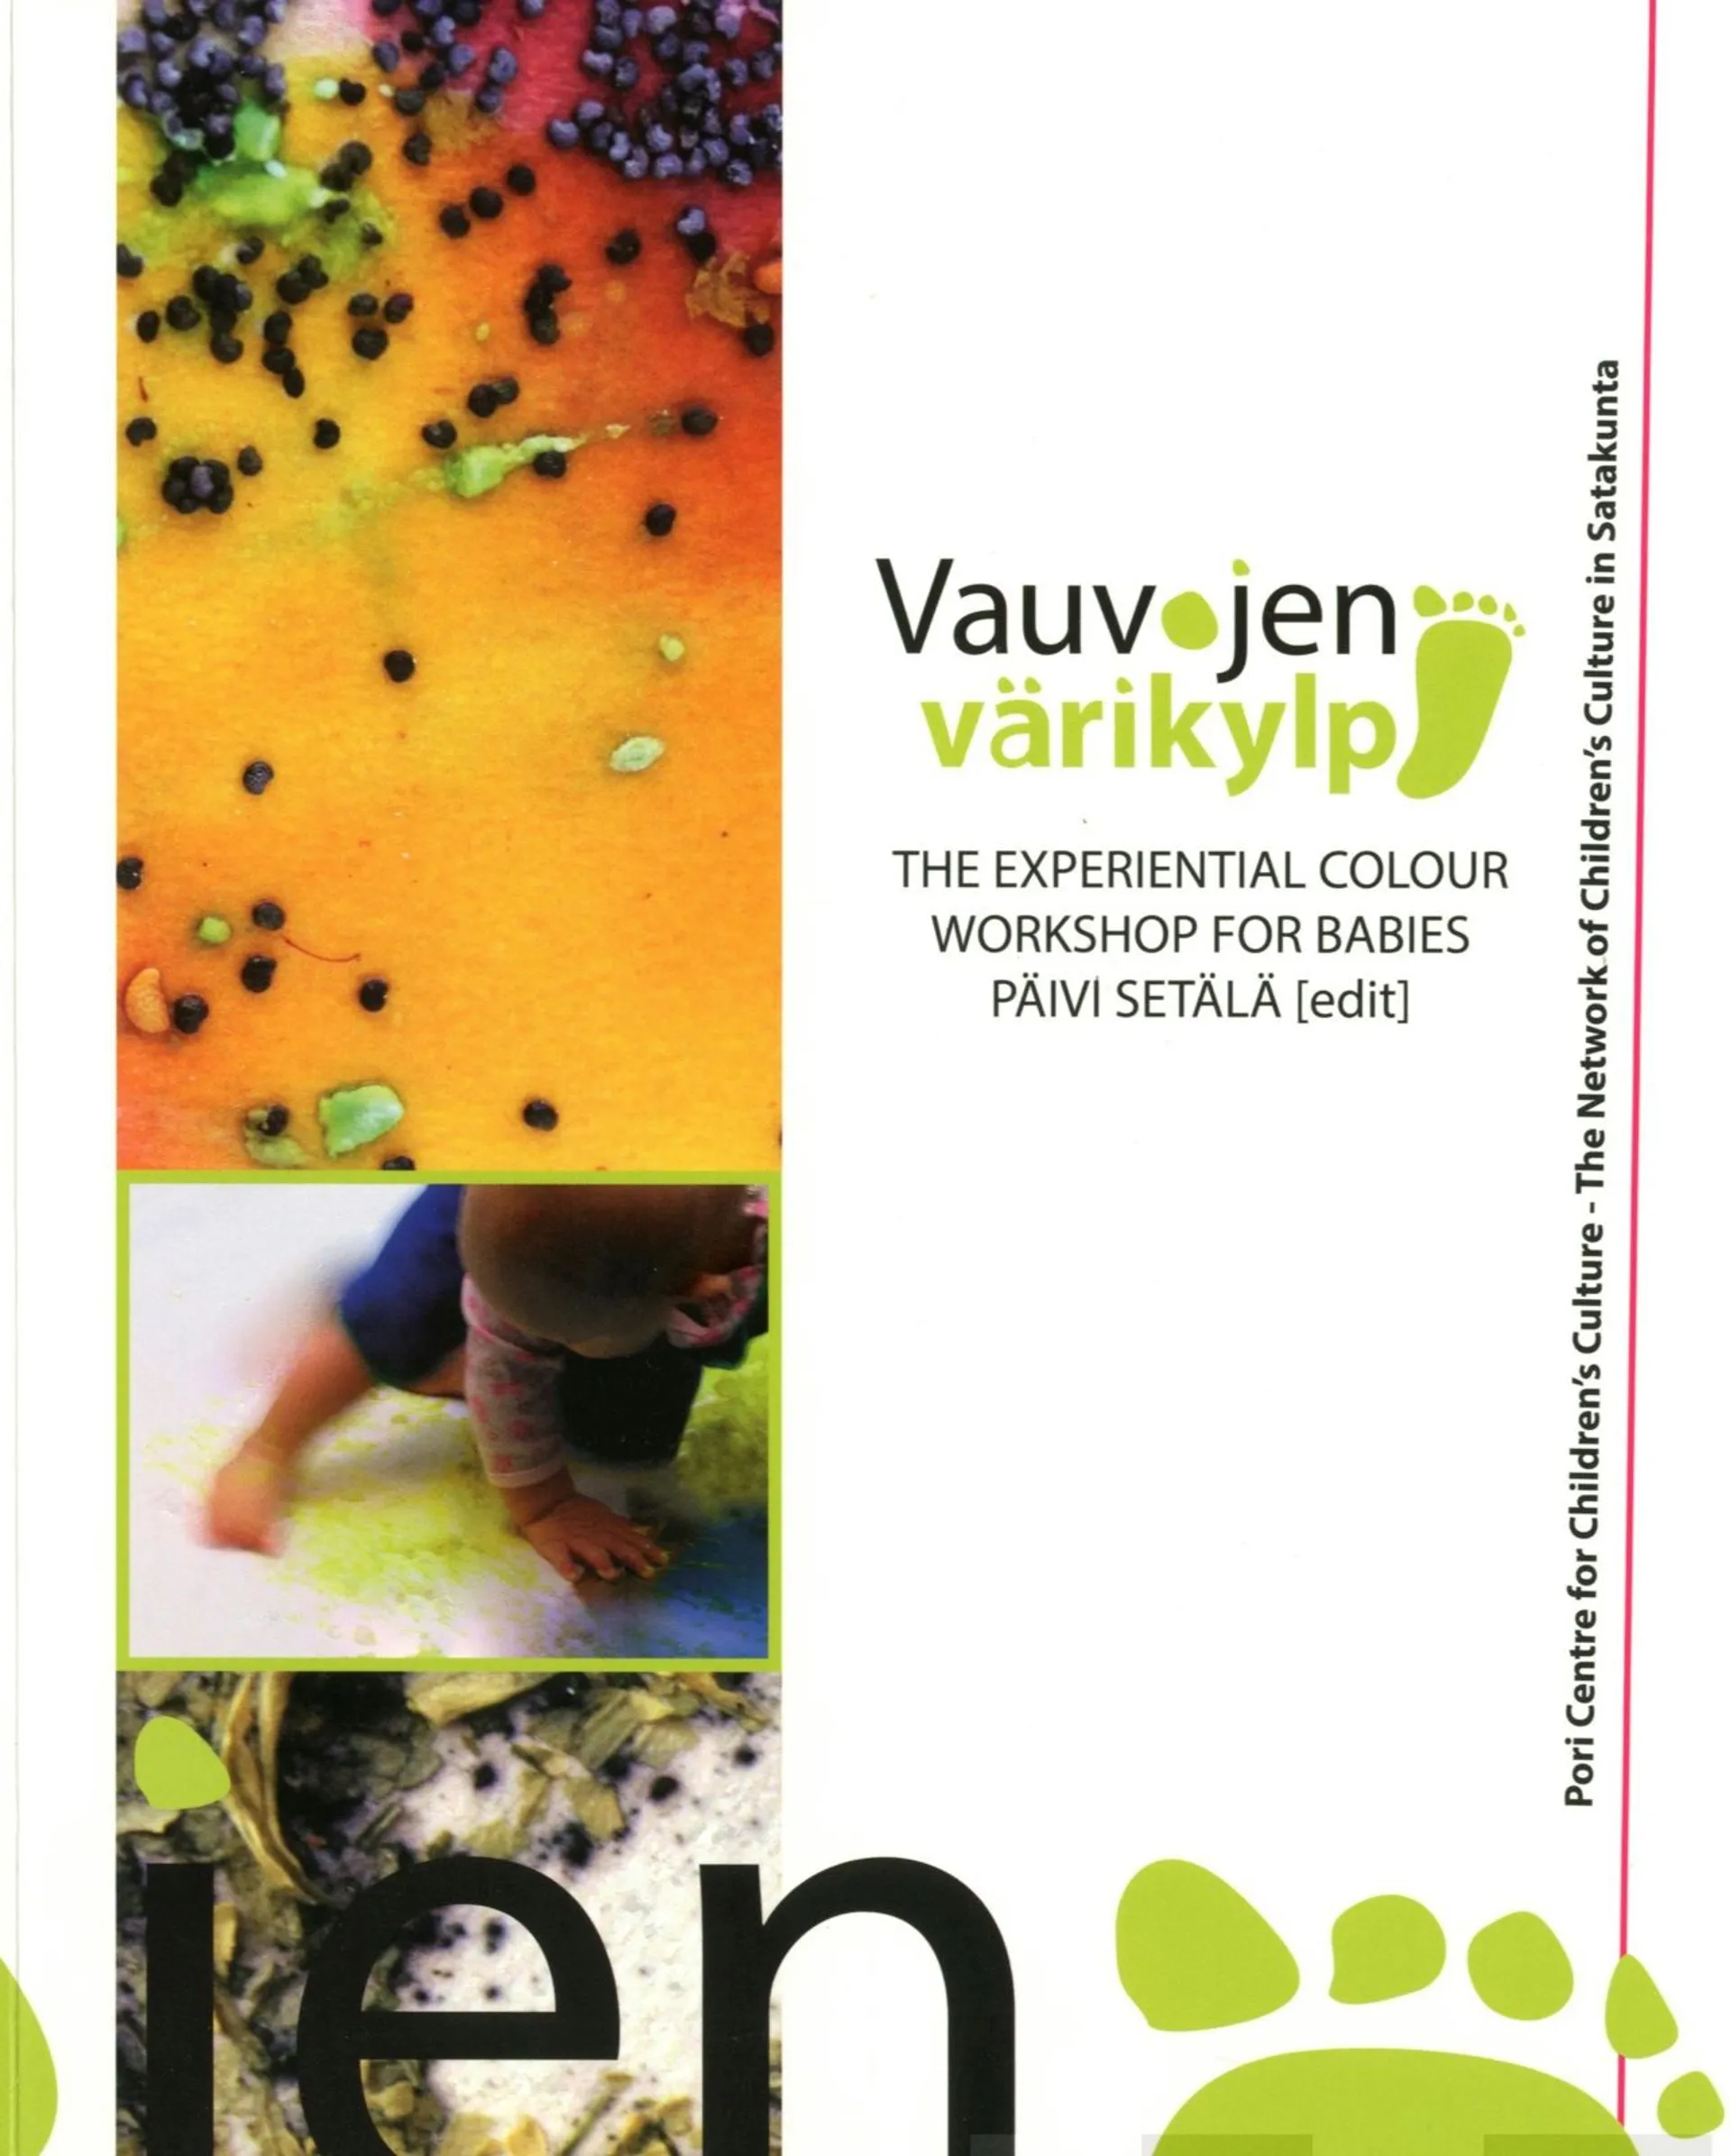 Vauvojen värikylpy - The Experiential Colour Workshop for Babies